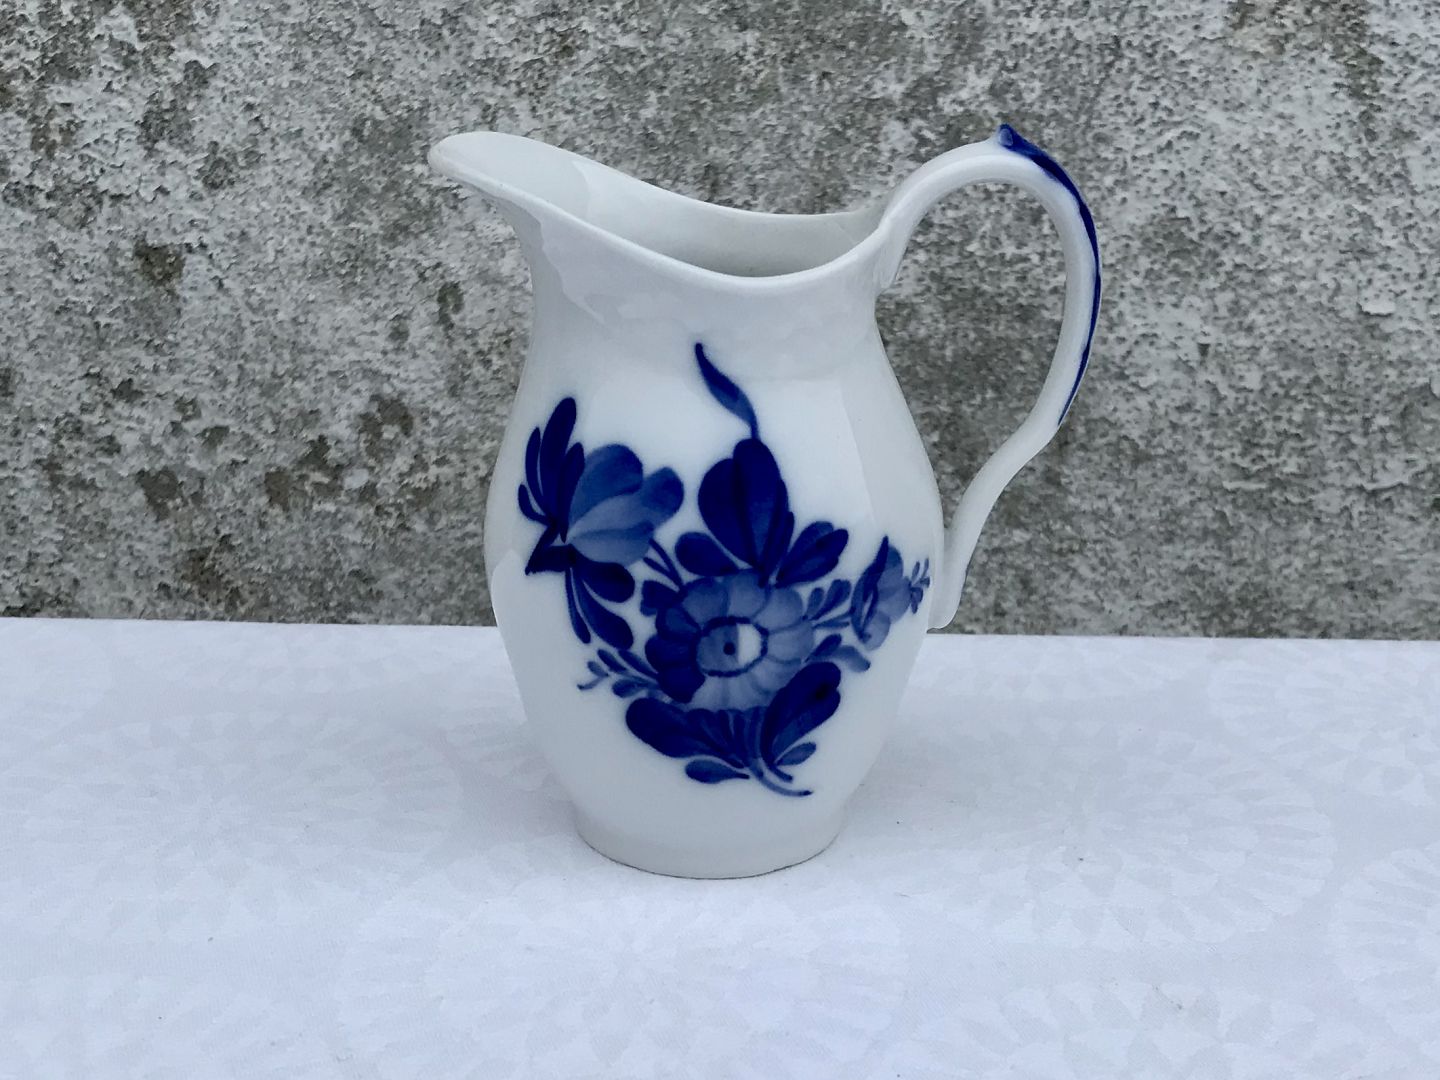 Moster Olga - Antik & Design - Royal Copenhagen * Flettet blå blomst * Flødekande * #10/8026 *175kr - Royal Copenhagen * Flettet blå blomst * Flødekande * #10/8026 *175kr